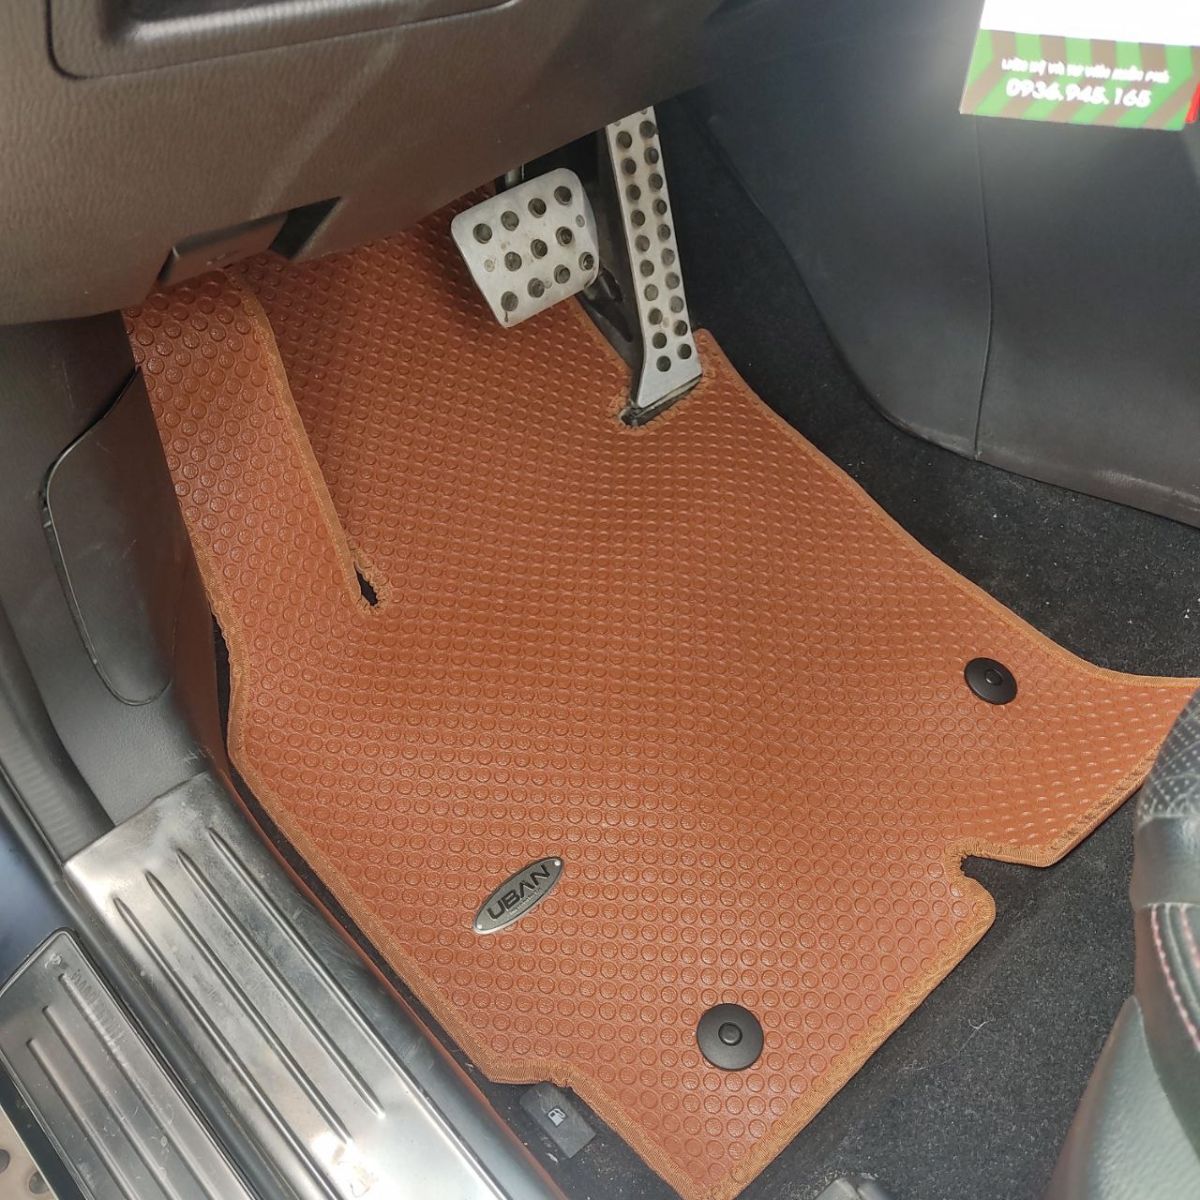 Thảm ô tô Mazda 6 với thiết kế thông minh là các chốt cố định cực kì dễ tháo lắp